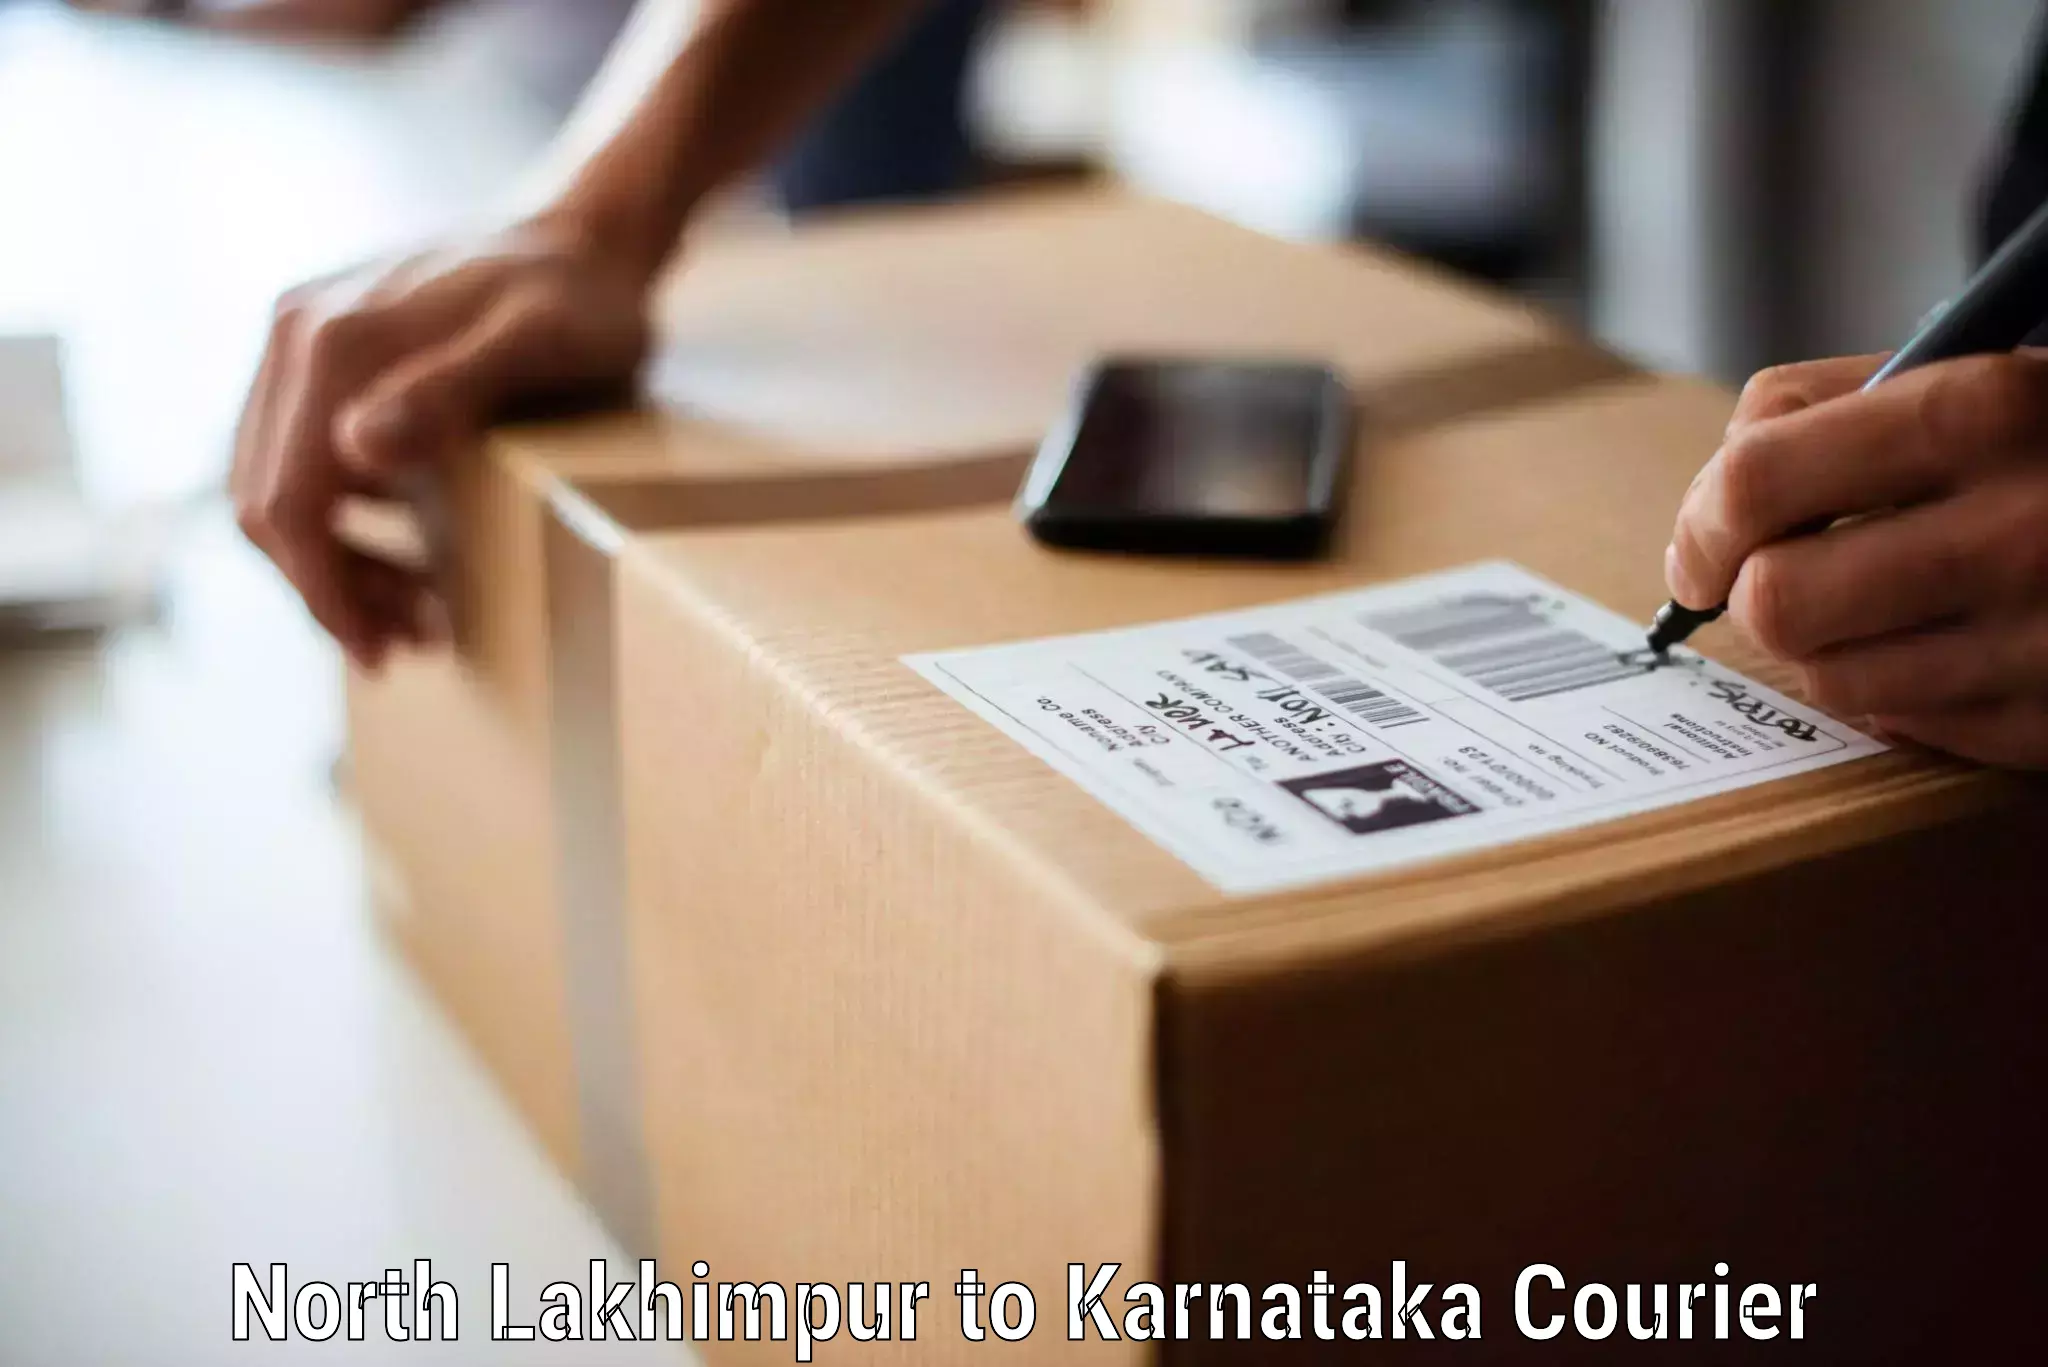 Expert moving and storage North Lakhimpur to Karnataka